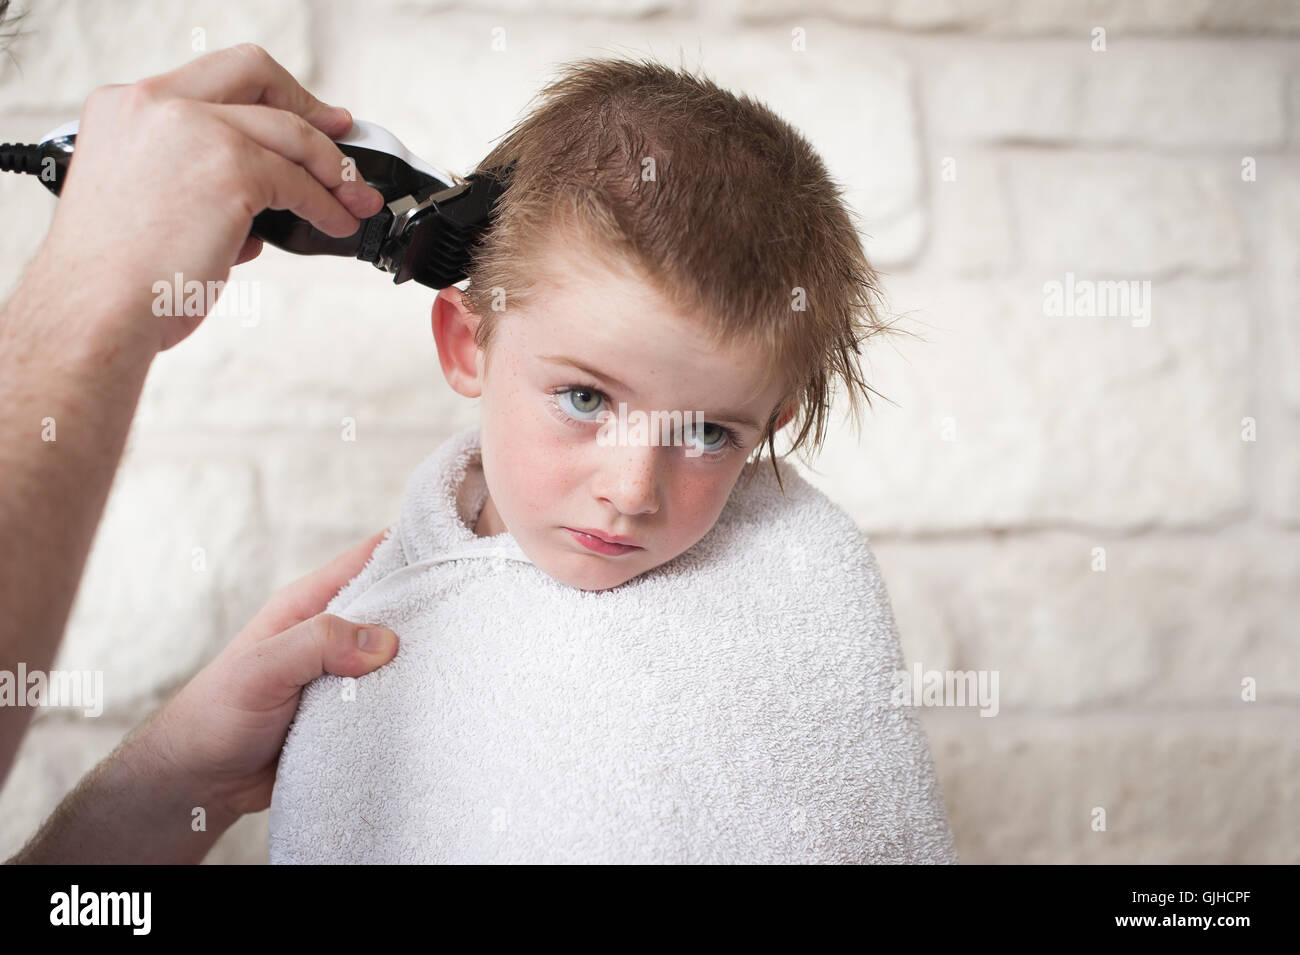 Boy Getting un buzz couper les cheveux par son père Banque D'Images